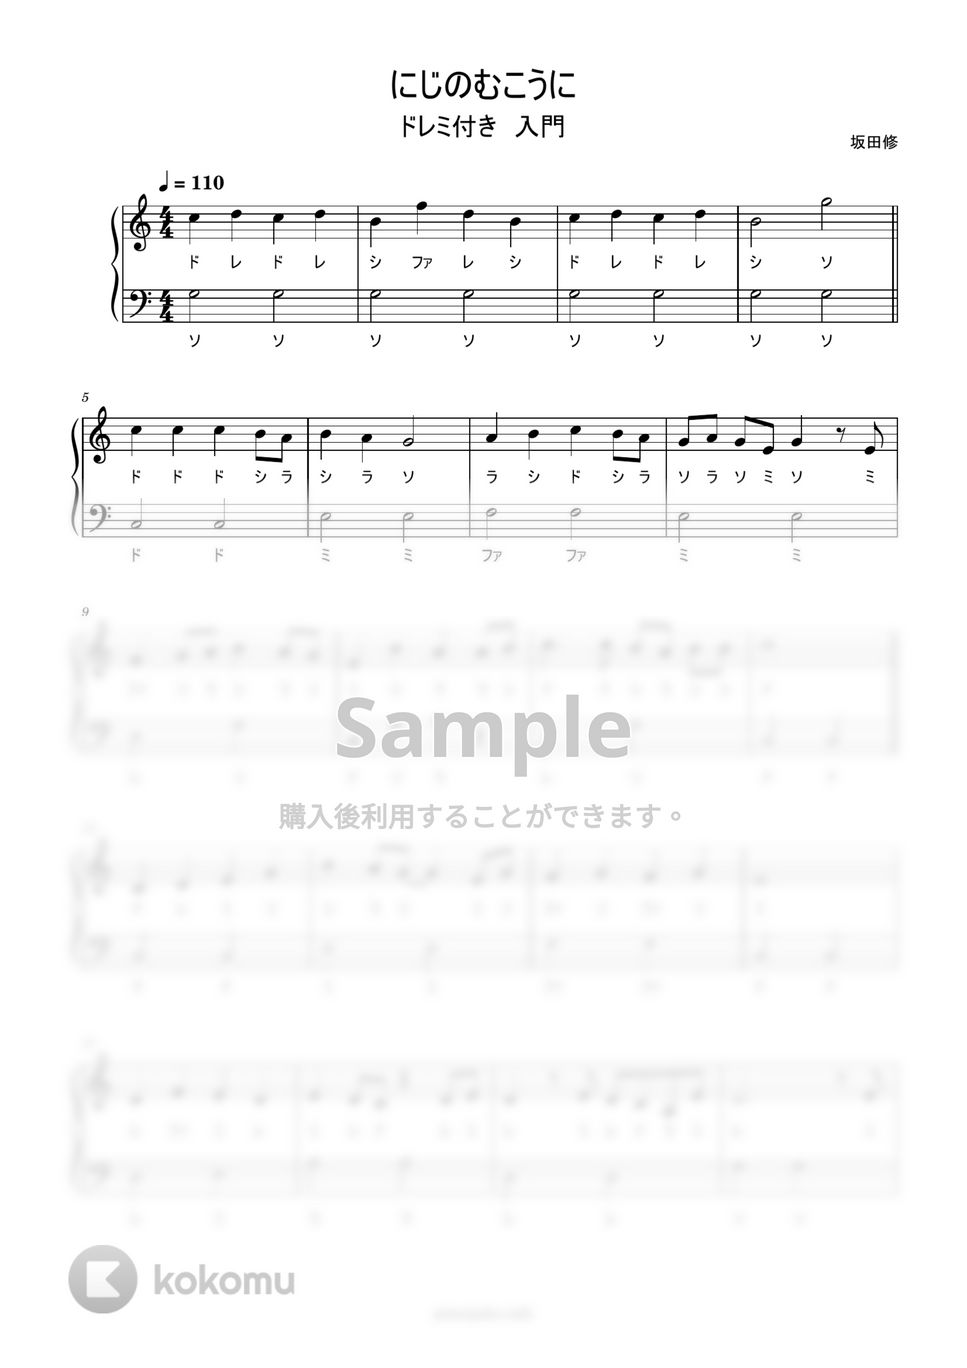 にじのむこうに (ドレミ付き簡単楽譜) by ピアノ塾